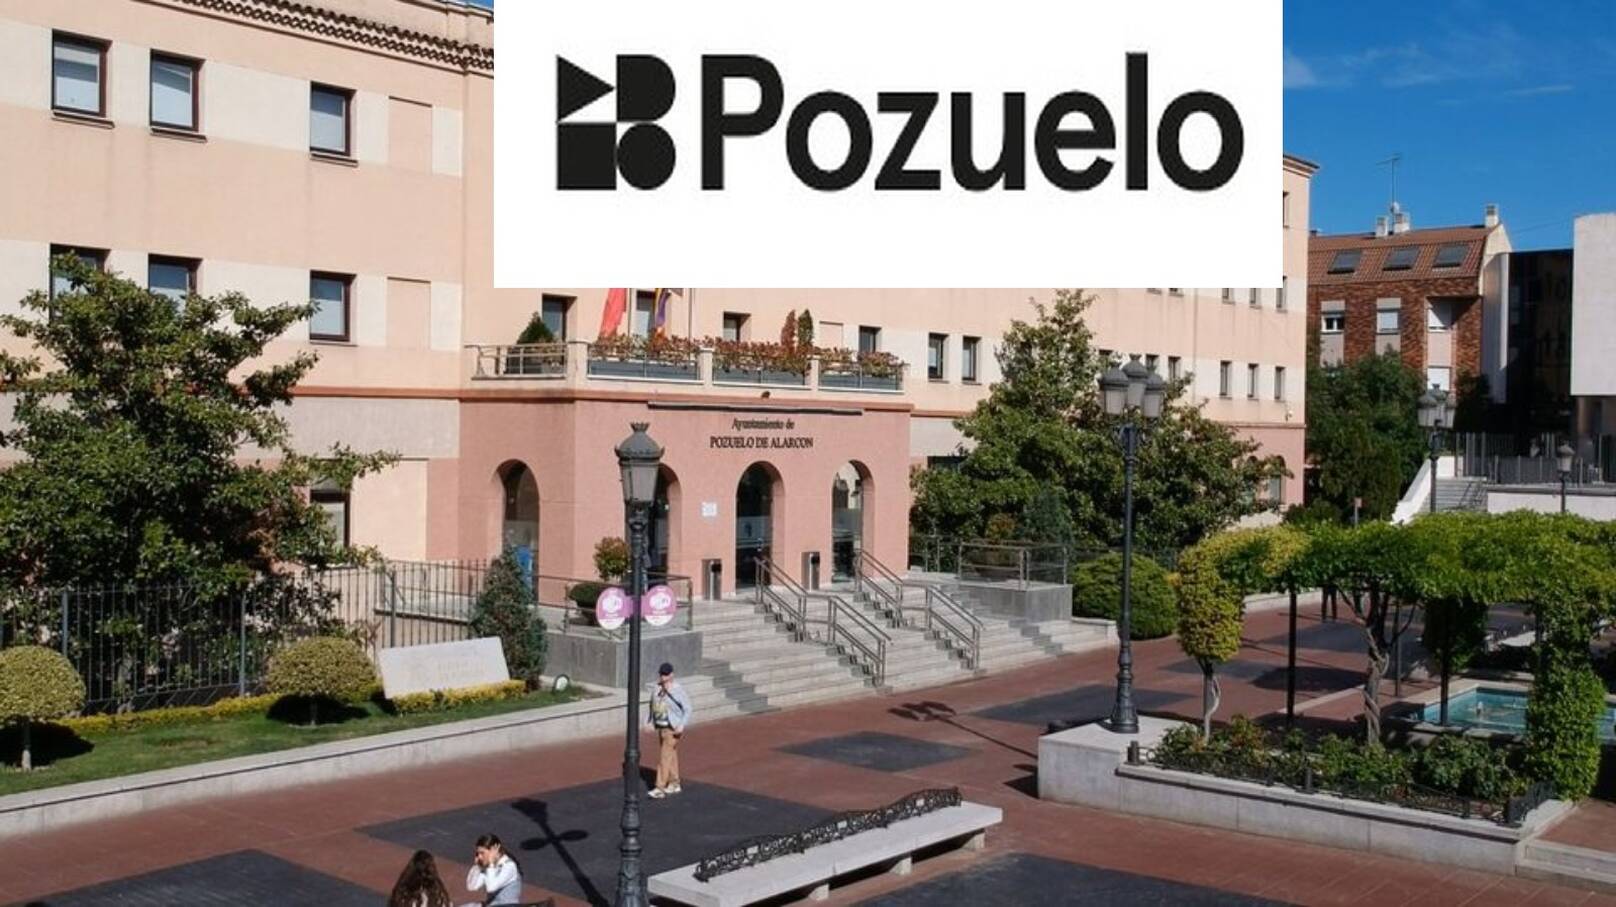 El nuevo y polémico logo del Ayuntamiento de Pozuelo ha costado 1.815 euros